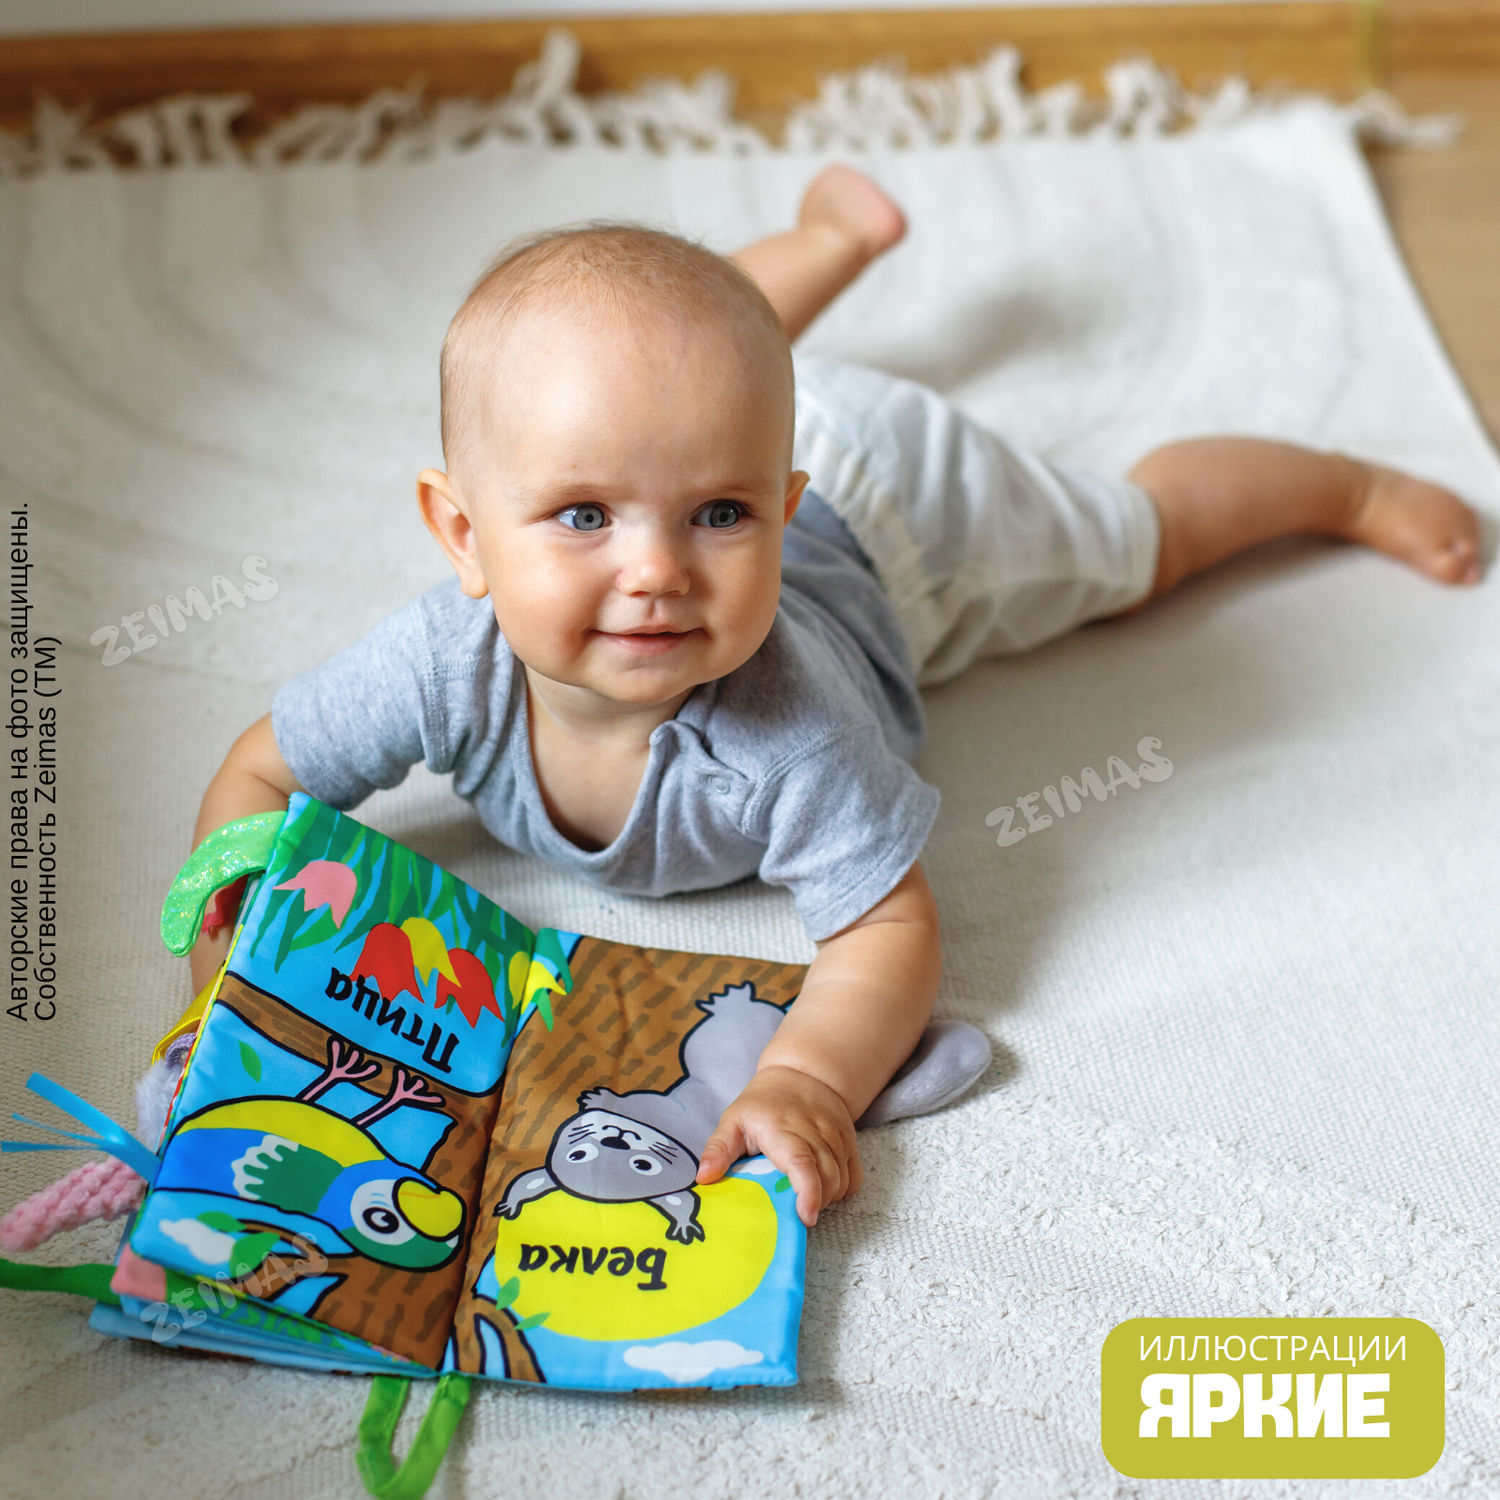 Книжка шуршалка детская Zeimas Лесной мир с хвостиками игрушка подвесная на кроватку - фото 2